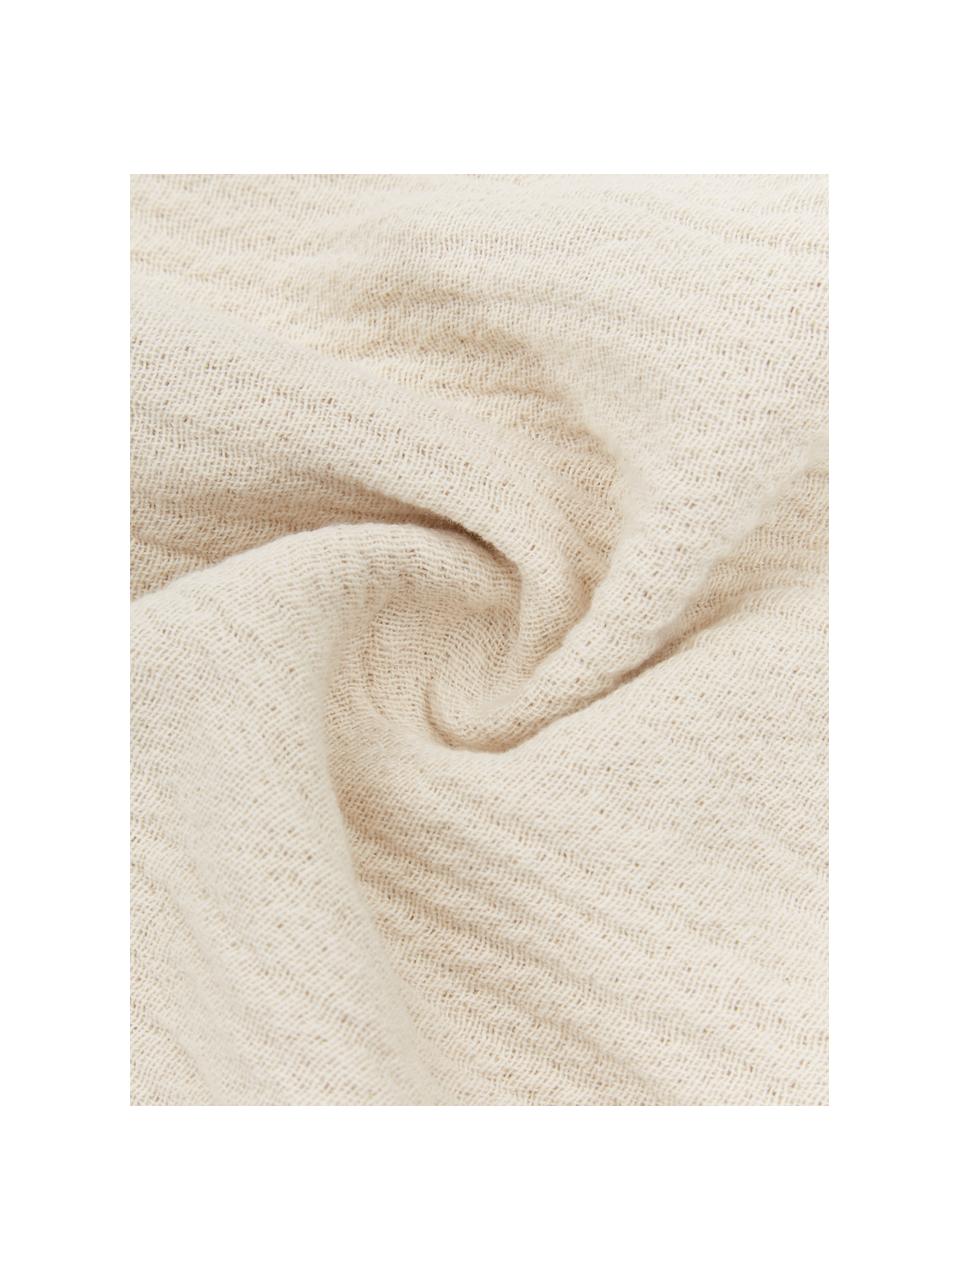 Oboustranný bavlněný pléd Thyme, 100 % organická bavlna, Béžová, krémově bílá, Š 130 cm, D 180 cm